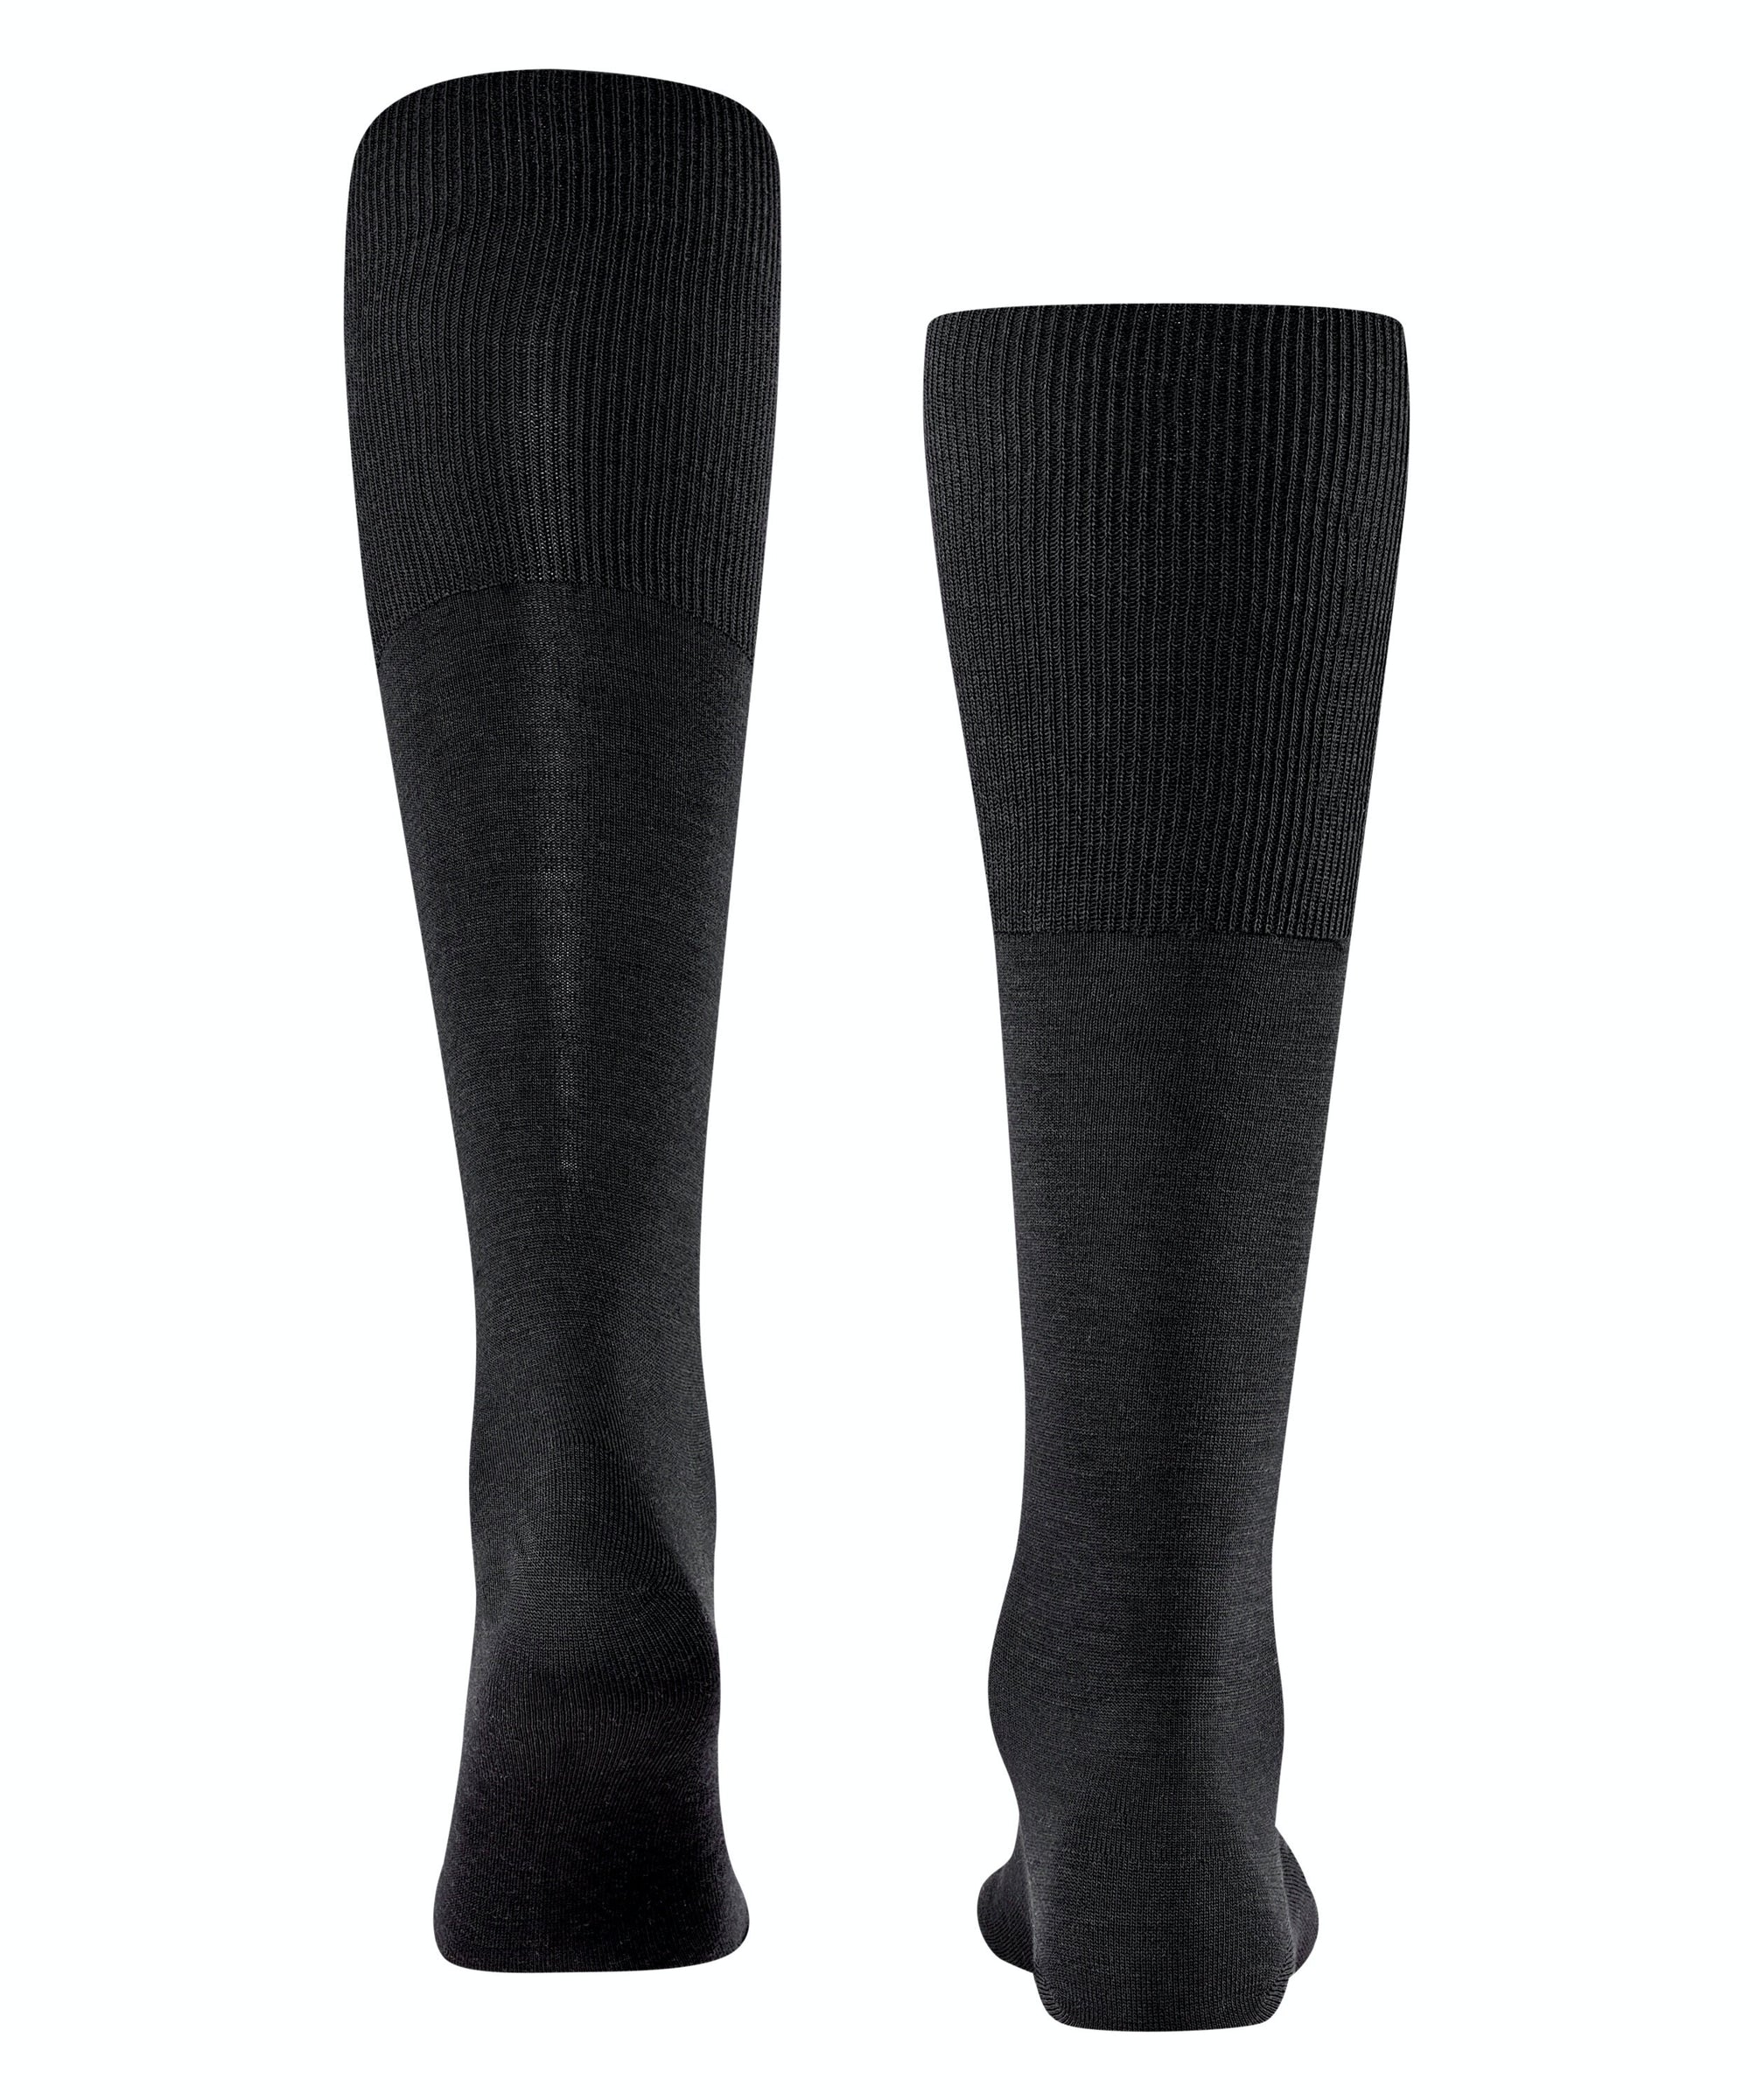 Falke Airport men's wool knee socks (knee height)